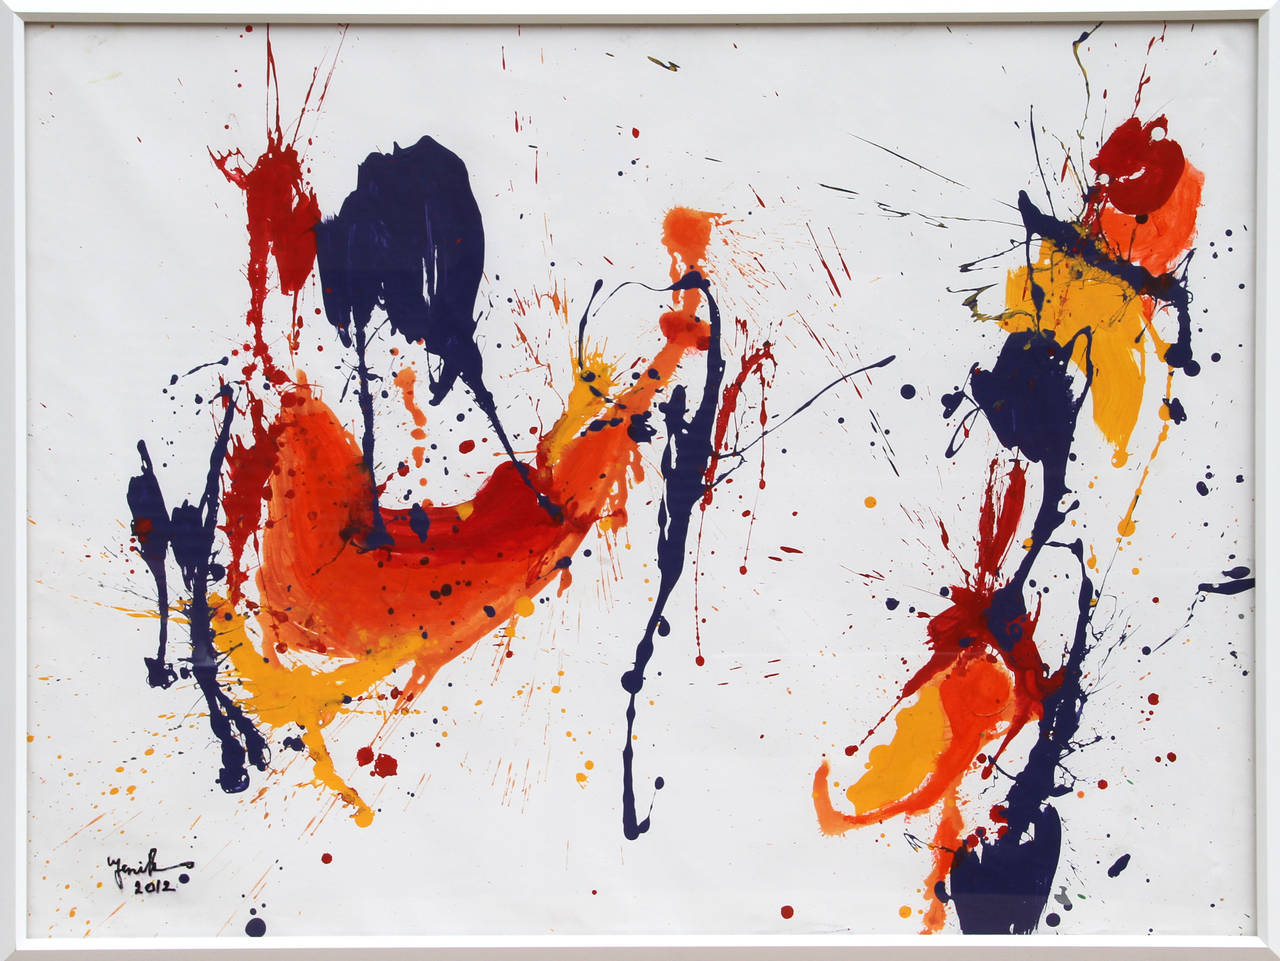 Une peinture acrylique de Jenik Cook datant de 2012. Une peinture de style expressionniste abstrait aux teintes contrastées et colorées utilisant la méthode de la peinture par éclaboussures. Signé dans le coin inférieur gauche, dans un cadre